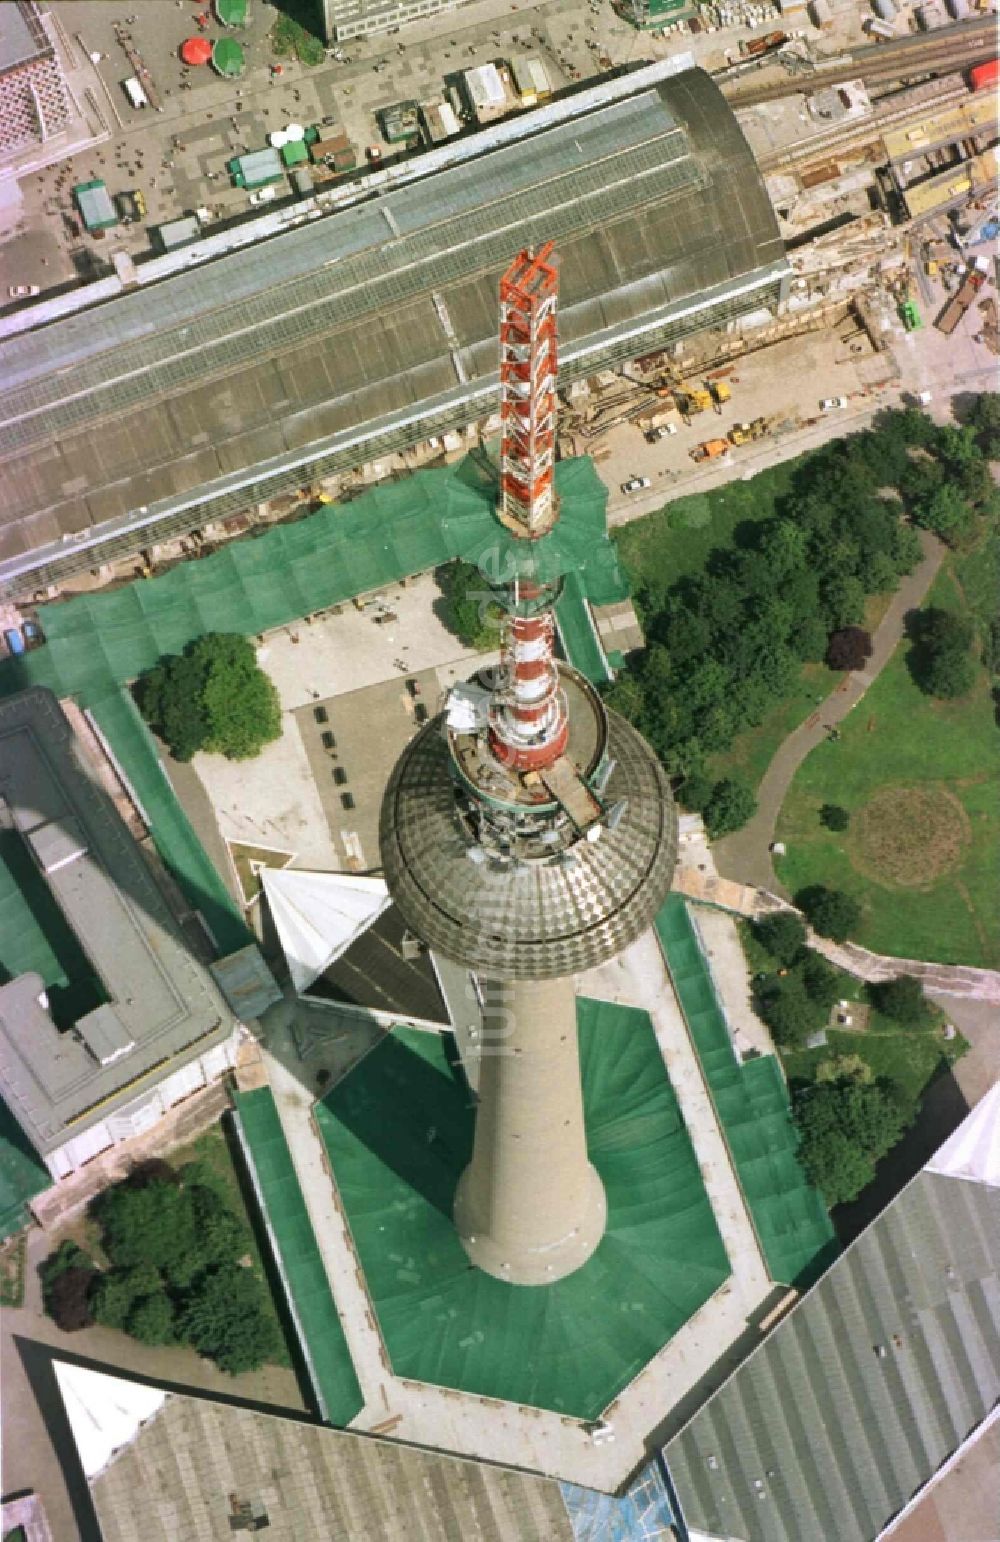 Luftbild Berlin - Erweiterung der Antennenspitze über der Kugel des Fernsehturm in Berlin, Deutschland